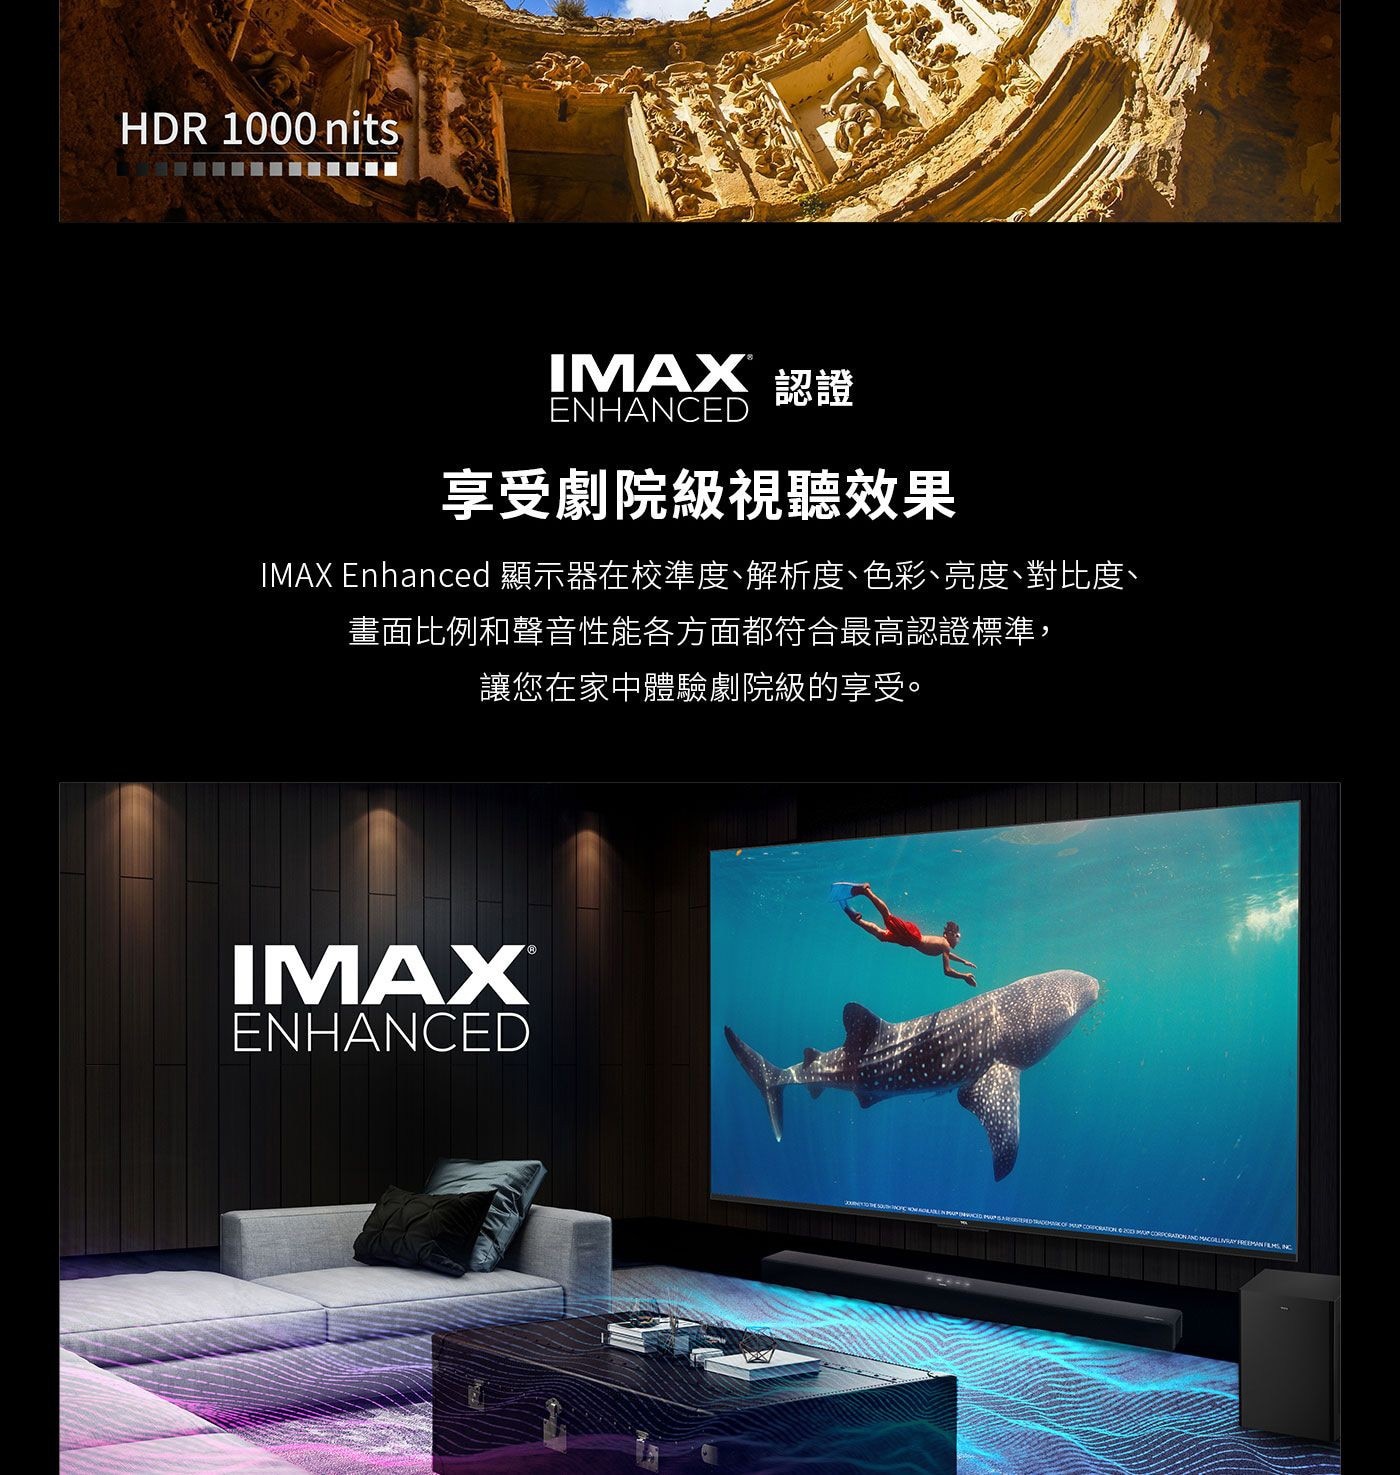 TCL 55吋 4K QLED 量子智能連網液晶顯示器 55C745 IMAX認證享受劇院級視聽效果